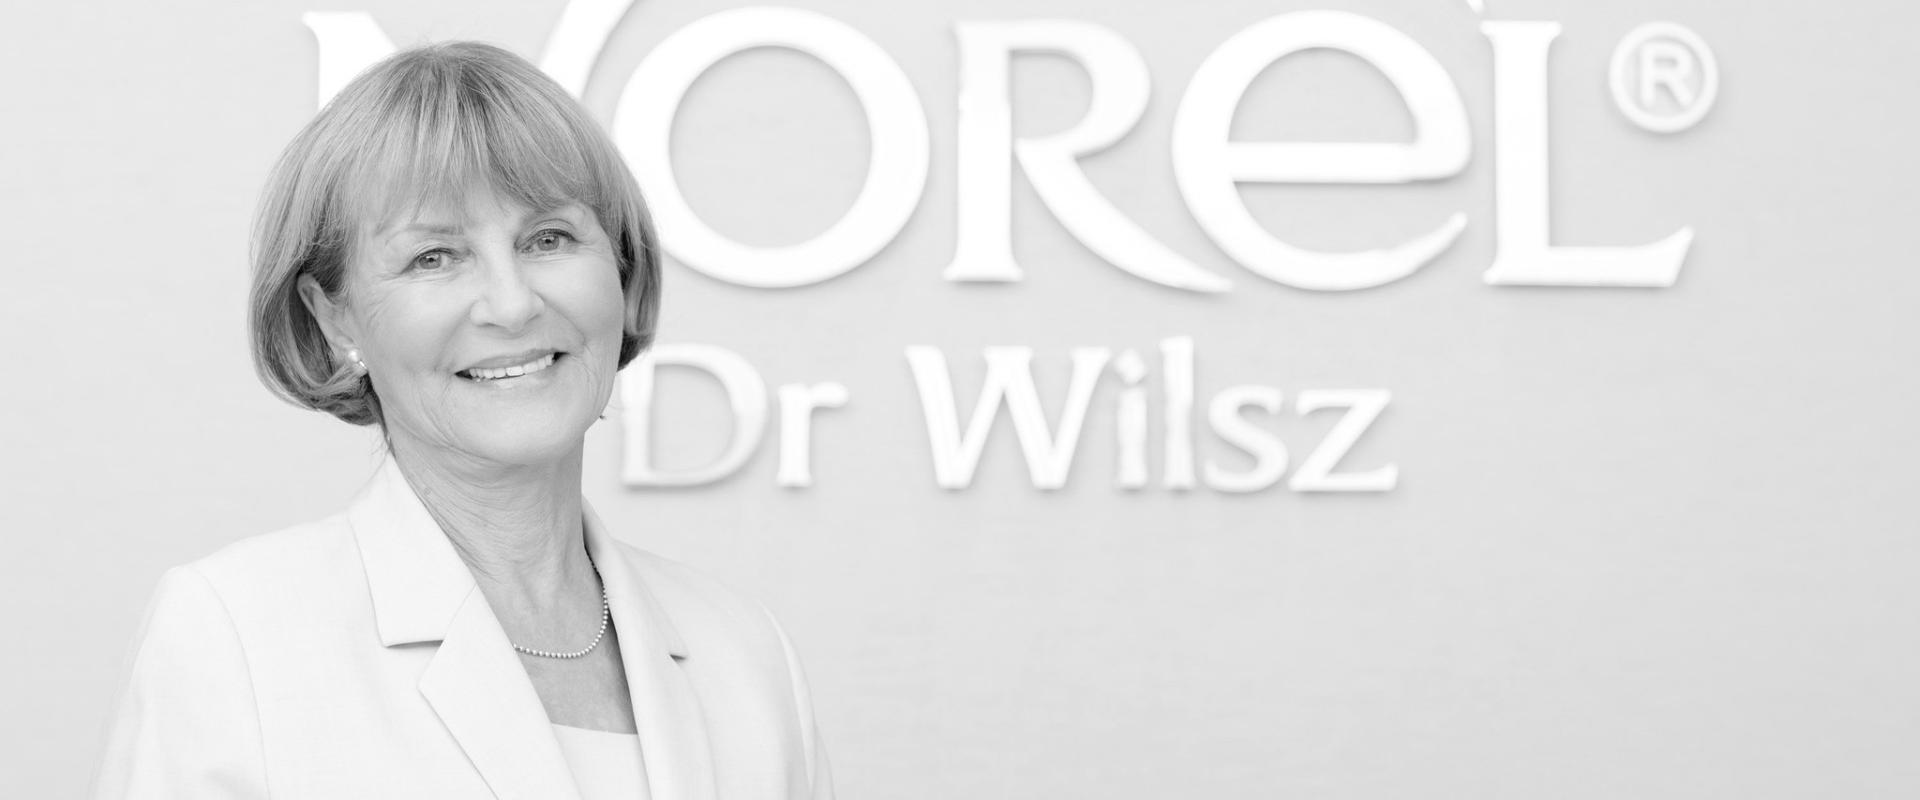 Odeszła dr Krystyna Wilsz, właścicielka firmy NOREL Dr Wilsz